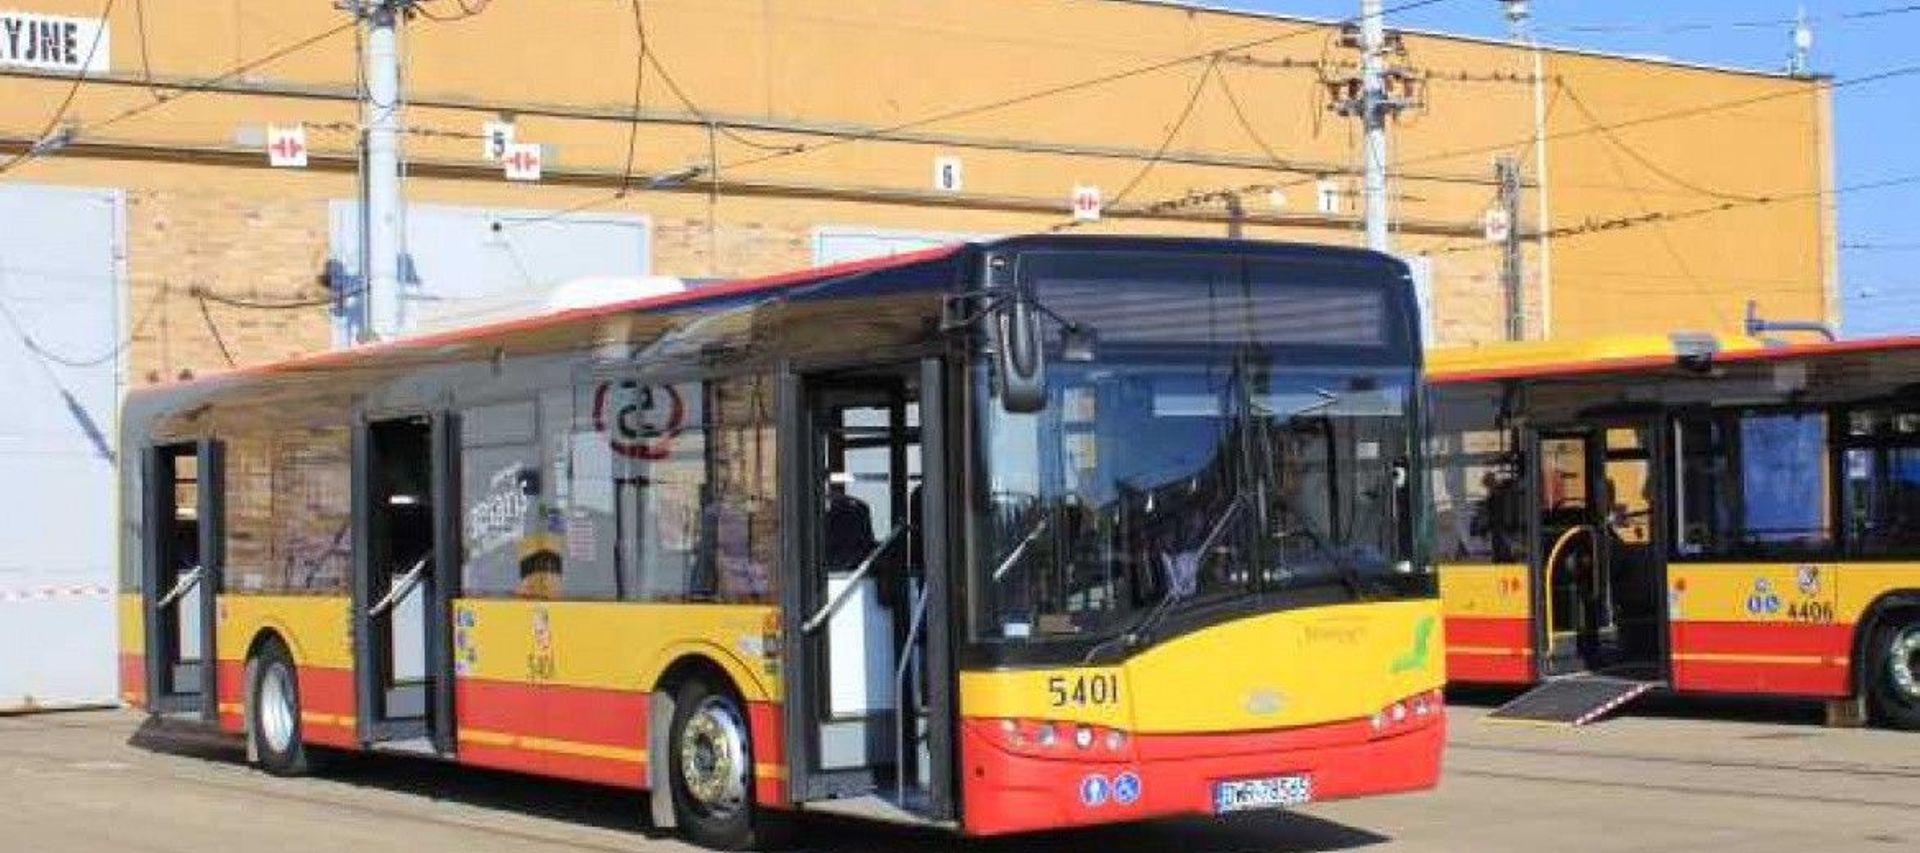 Wrocław: Pętla autobusowa na Polanowicach dwa razy droższa, niż się spodziewano? Mieszkańcy: Jest pilnie potrzebna